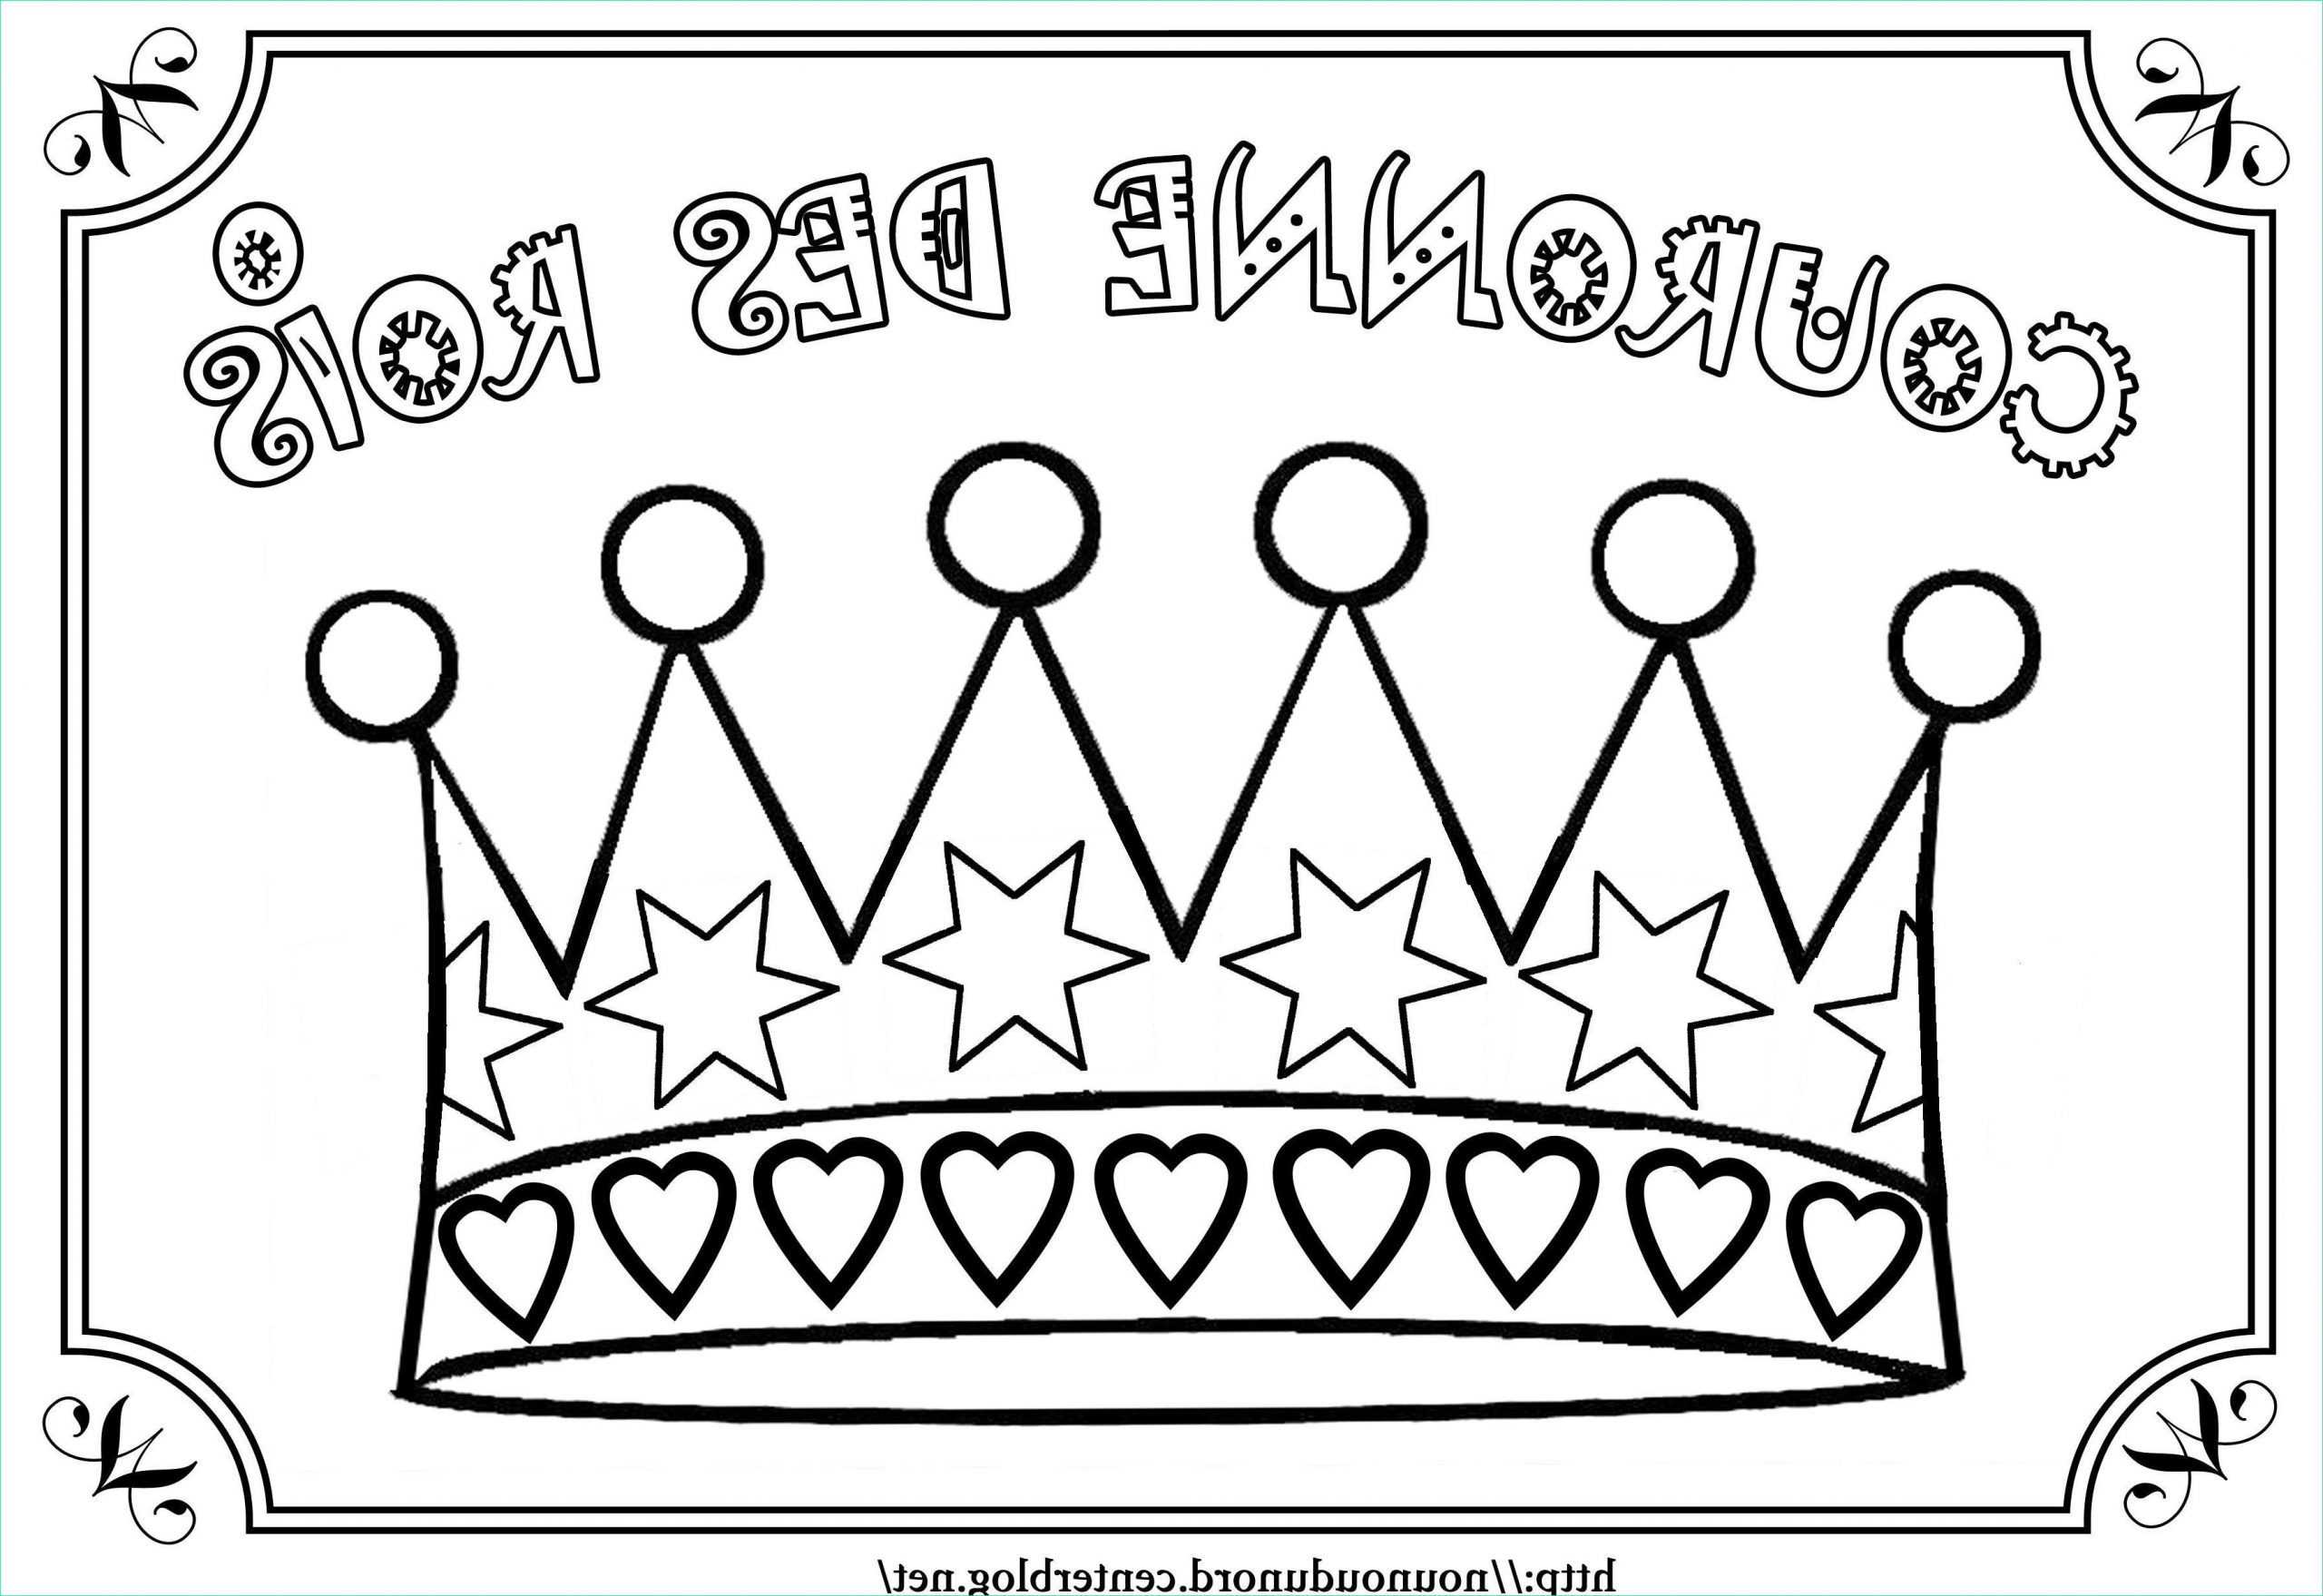 2334 coloriage la couronne des rois dessine par nounoudunord